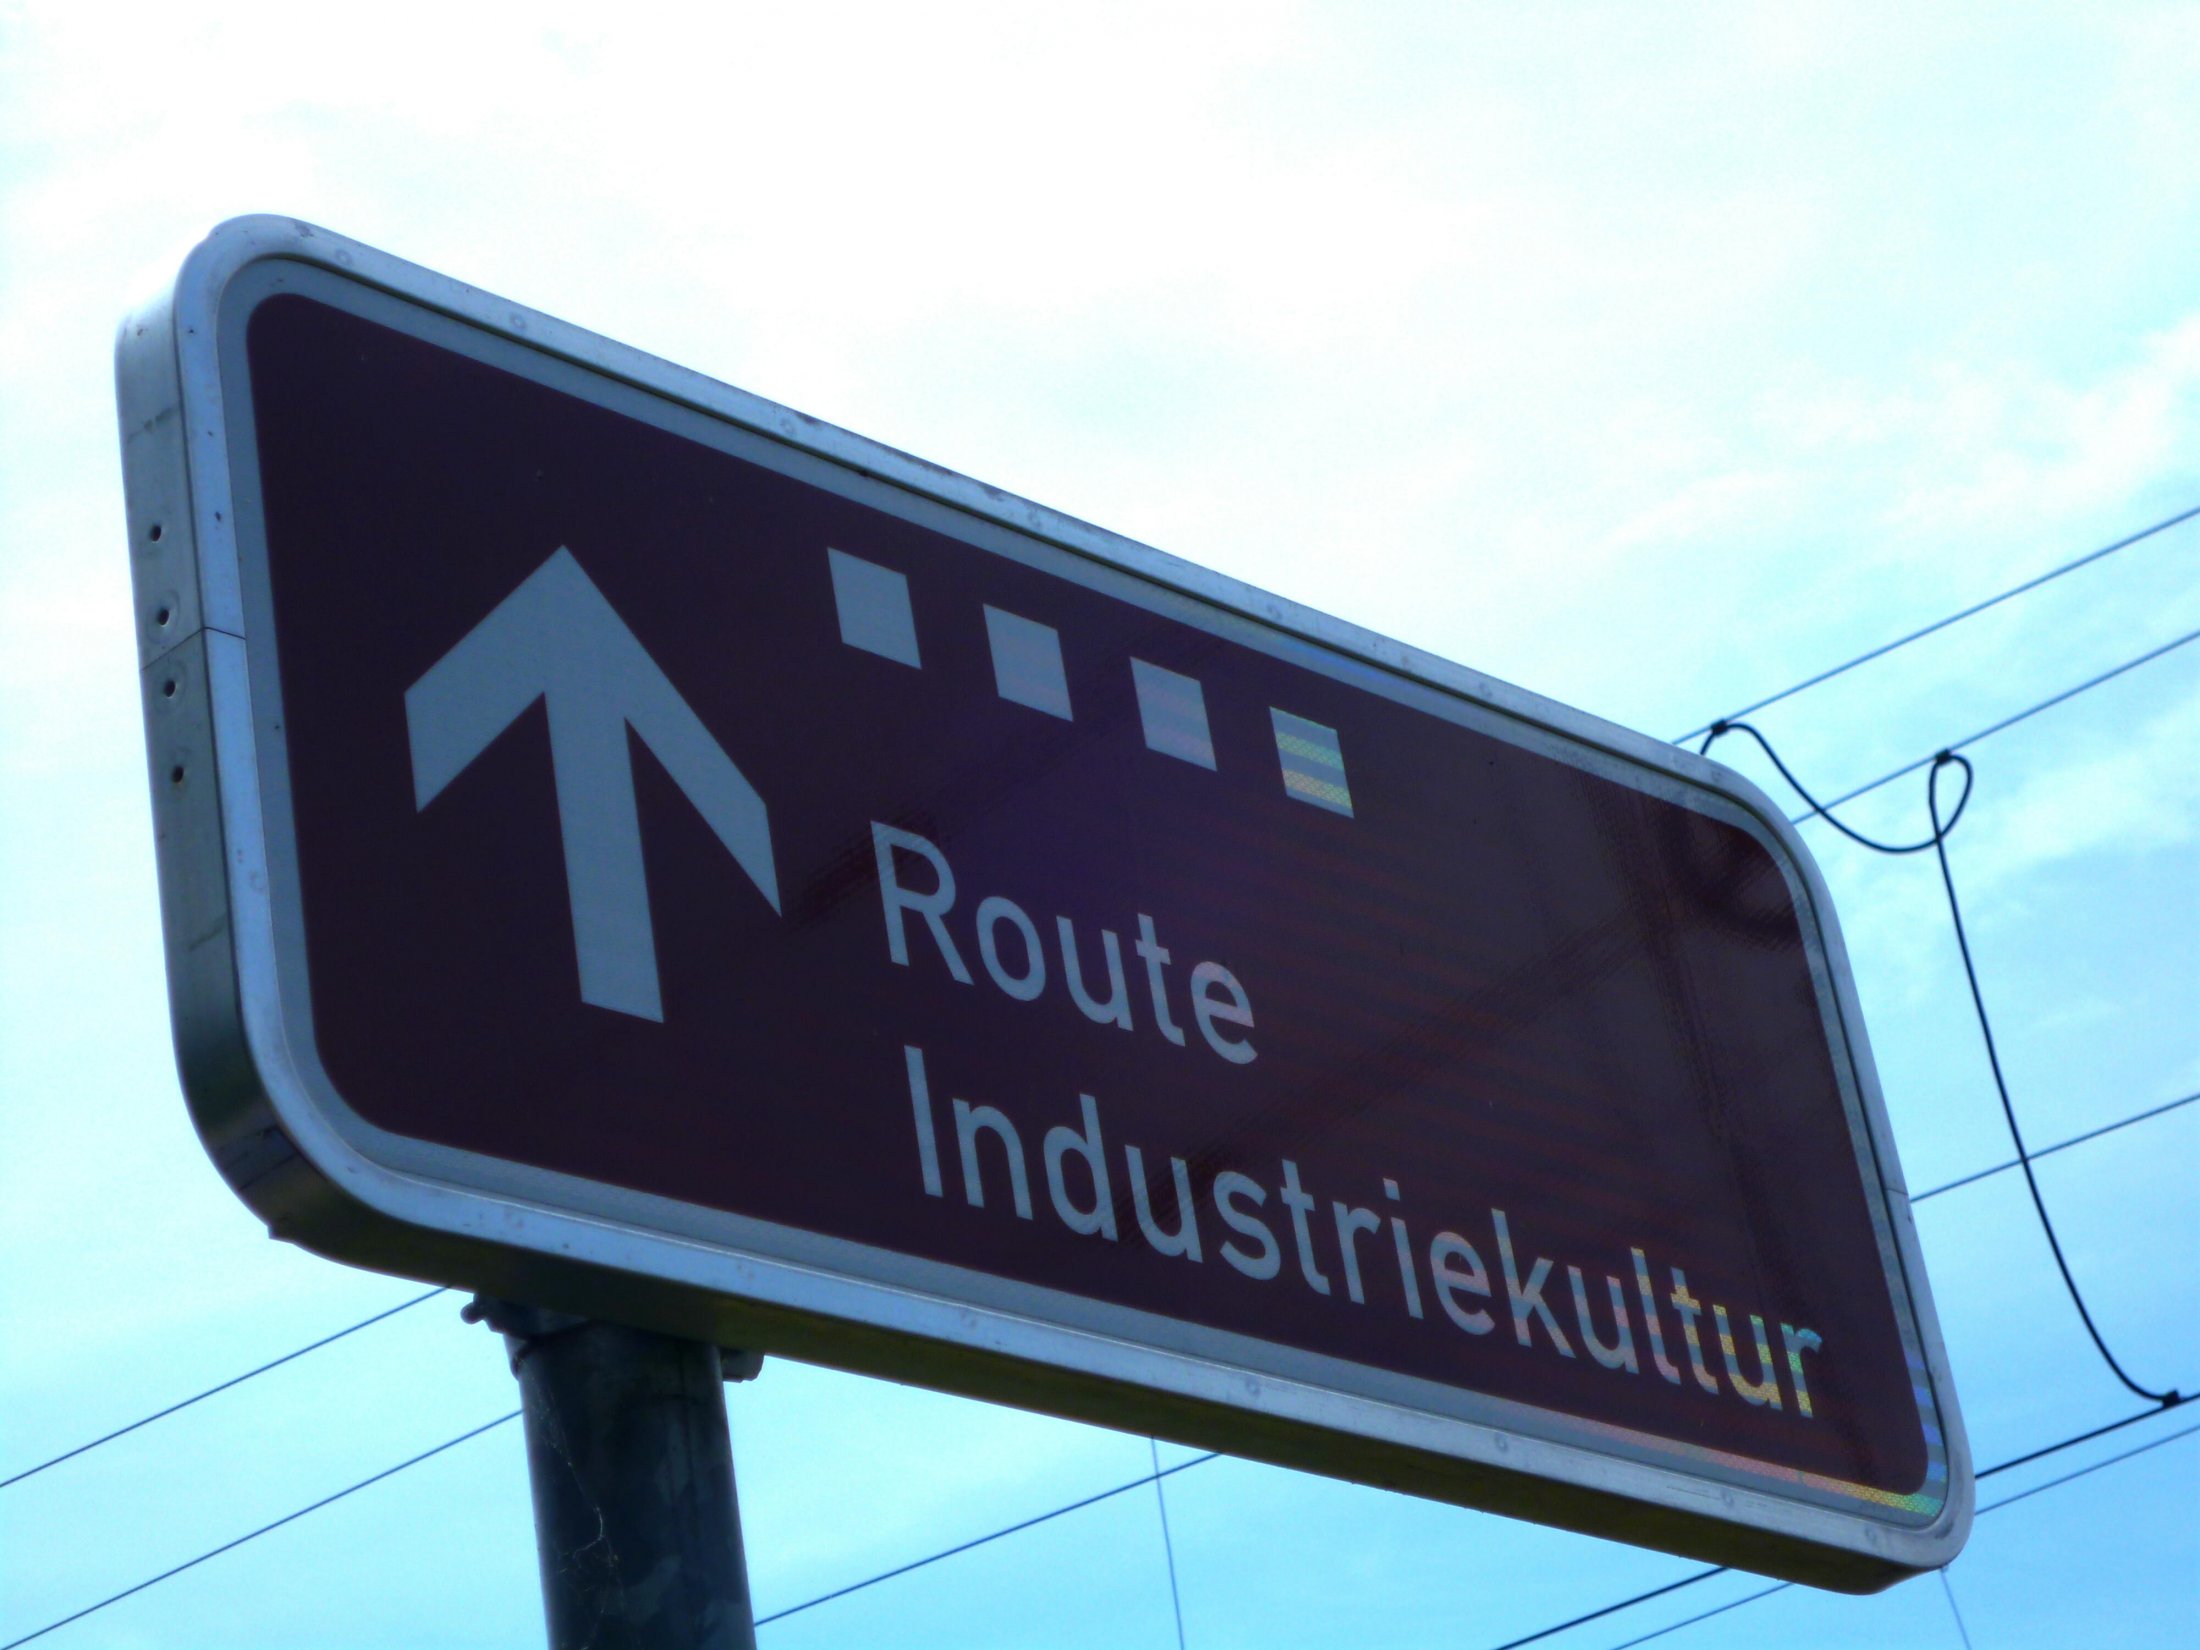 Route_Industriekultur